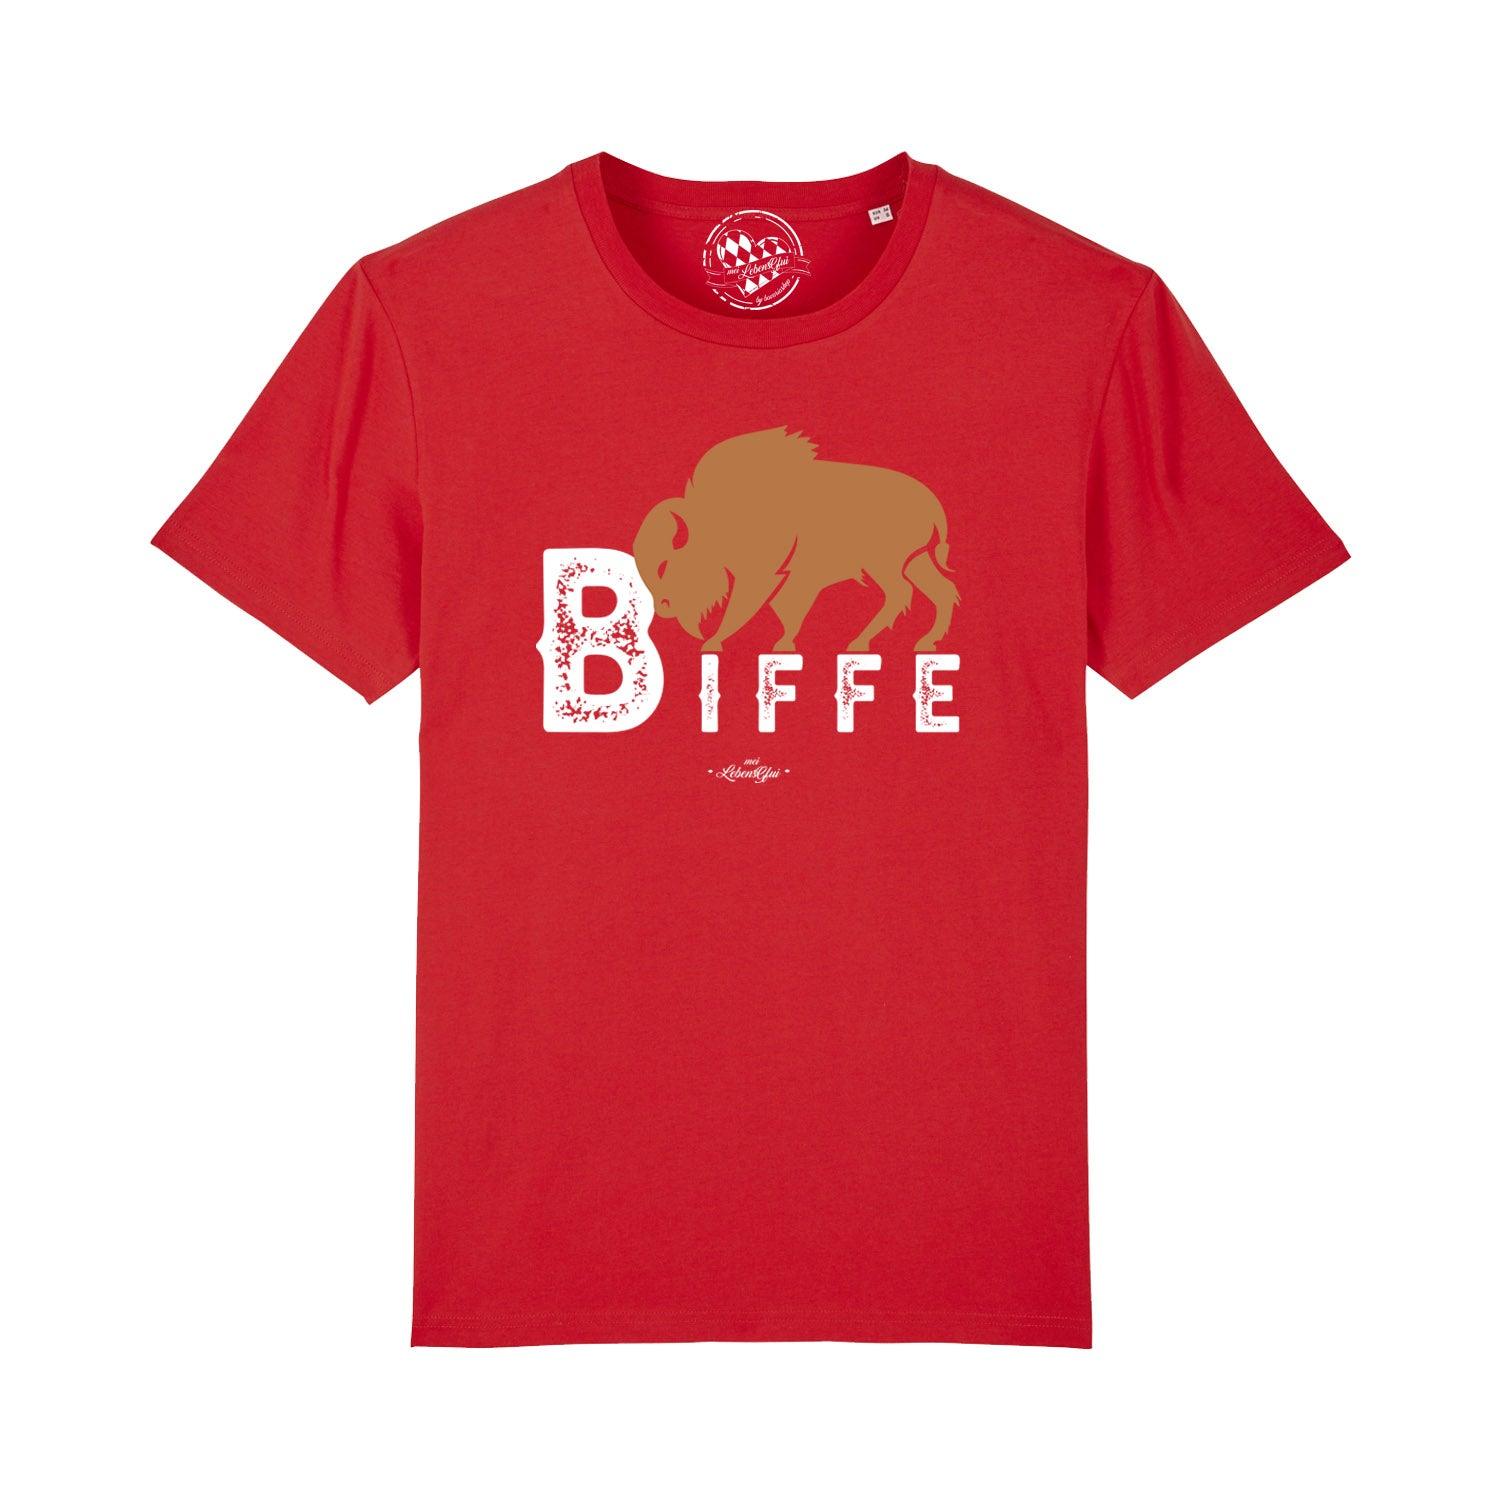 Herren T-Shirt "Biffe" - bavariashop - mei LebensGfui